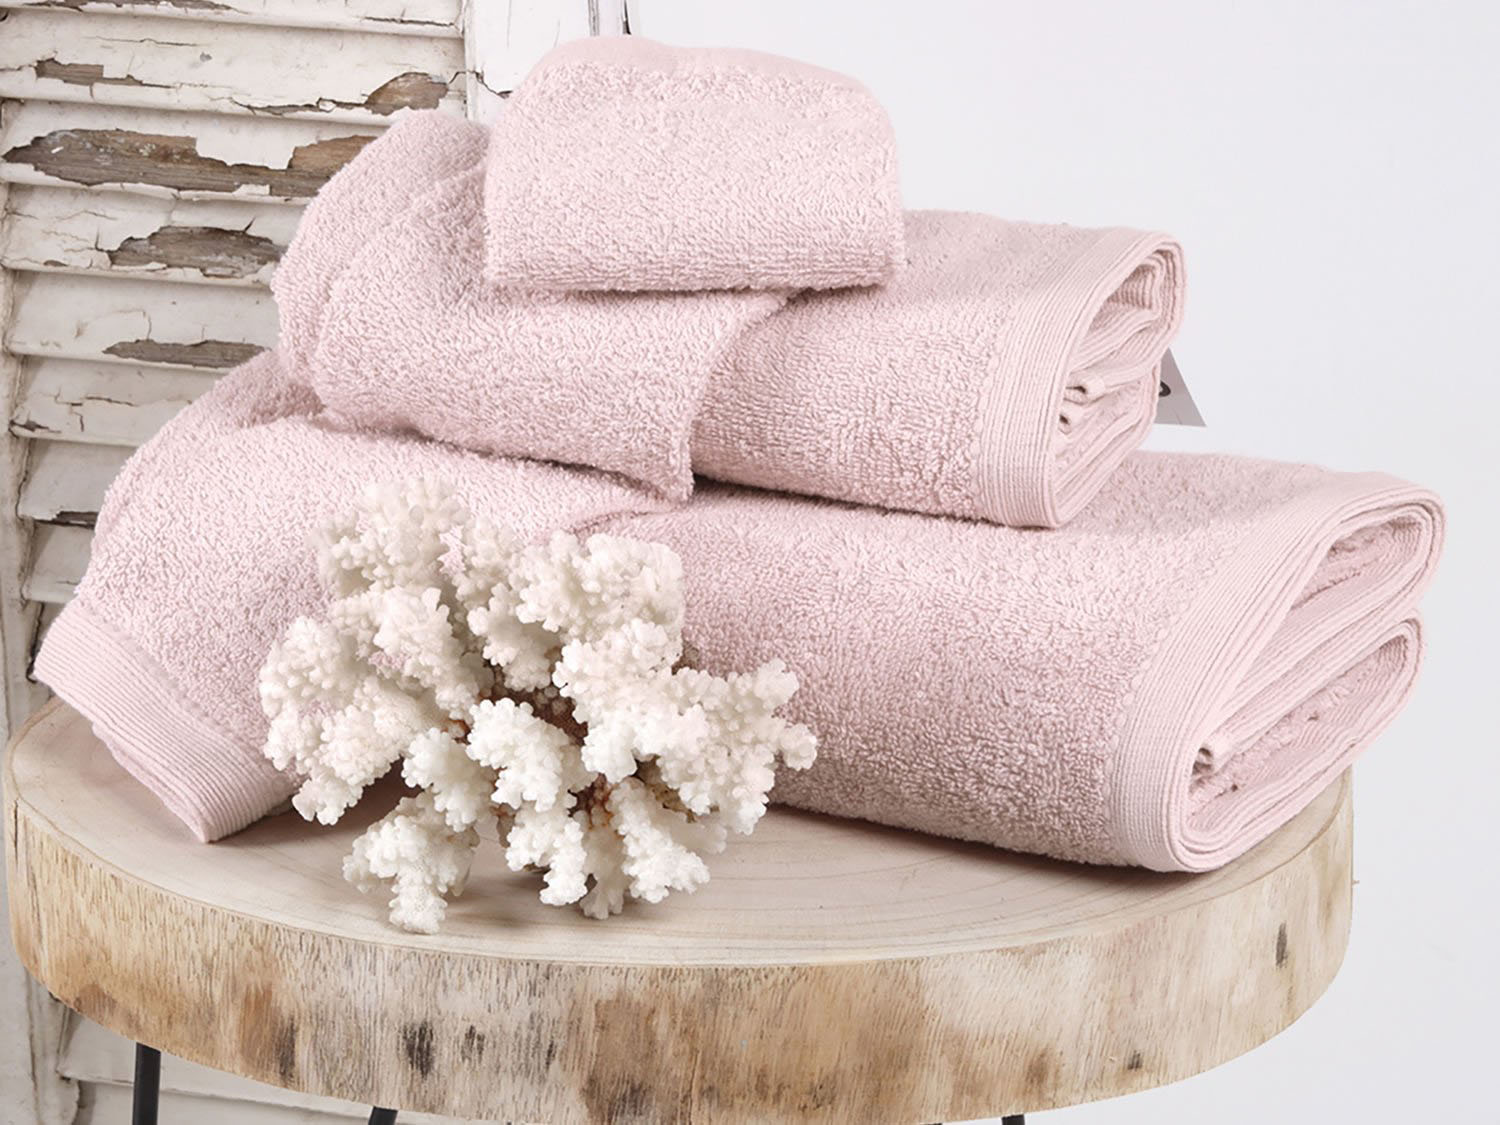 Πετσέτες Χερίων 30χ50 Sb Home Bathroom Collection Primus Towels Pink